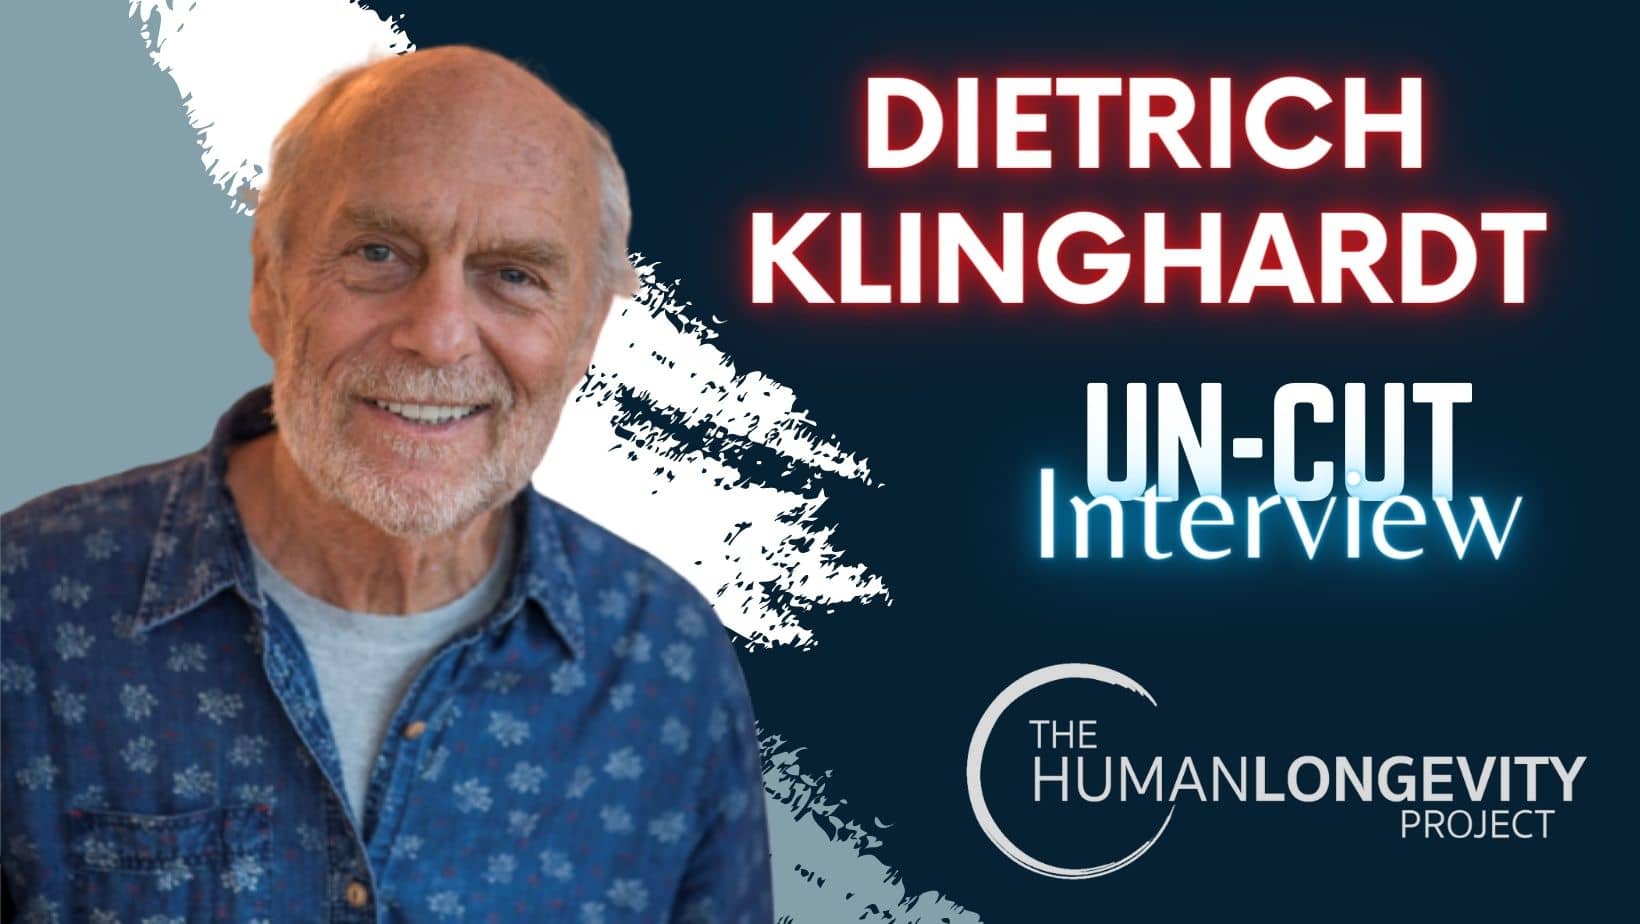 Human Longevity Project Uncut Interview With Dr. Dietrich Klinghardt